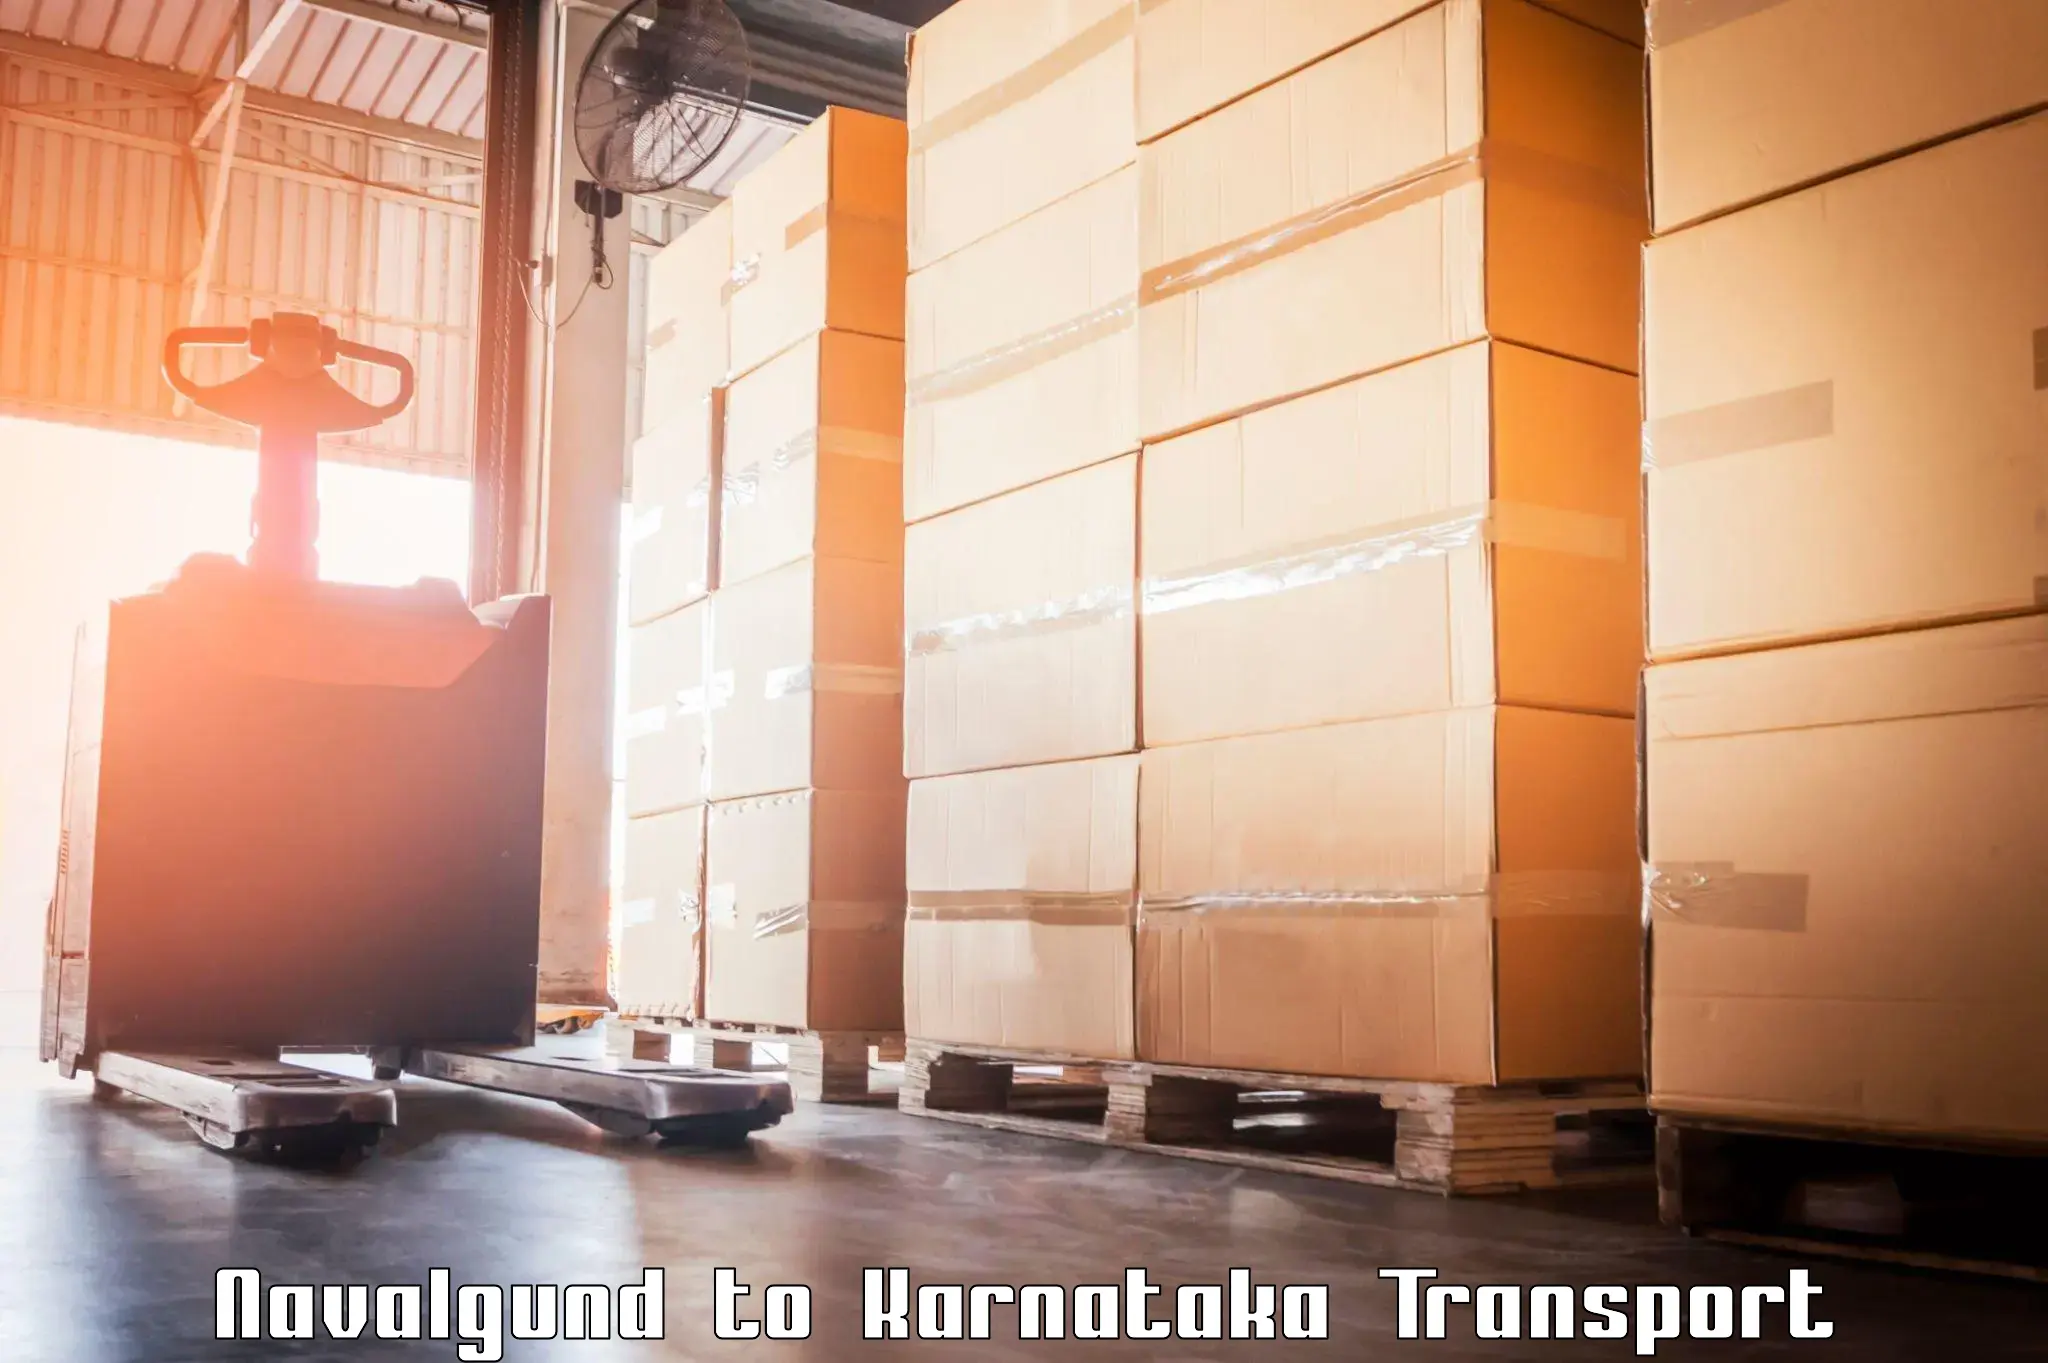 Part load transport service in India Navalgund to Toranagallu